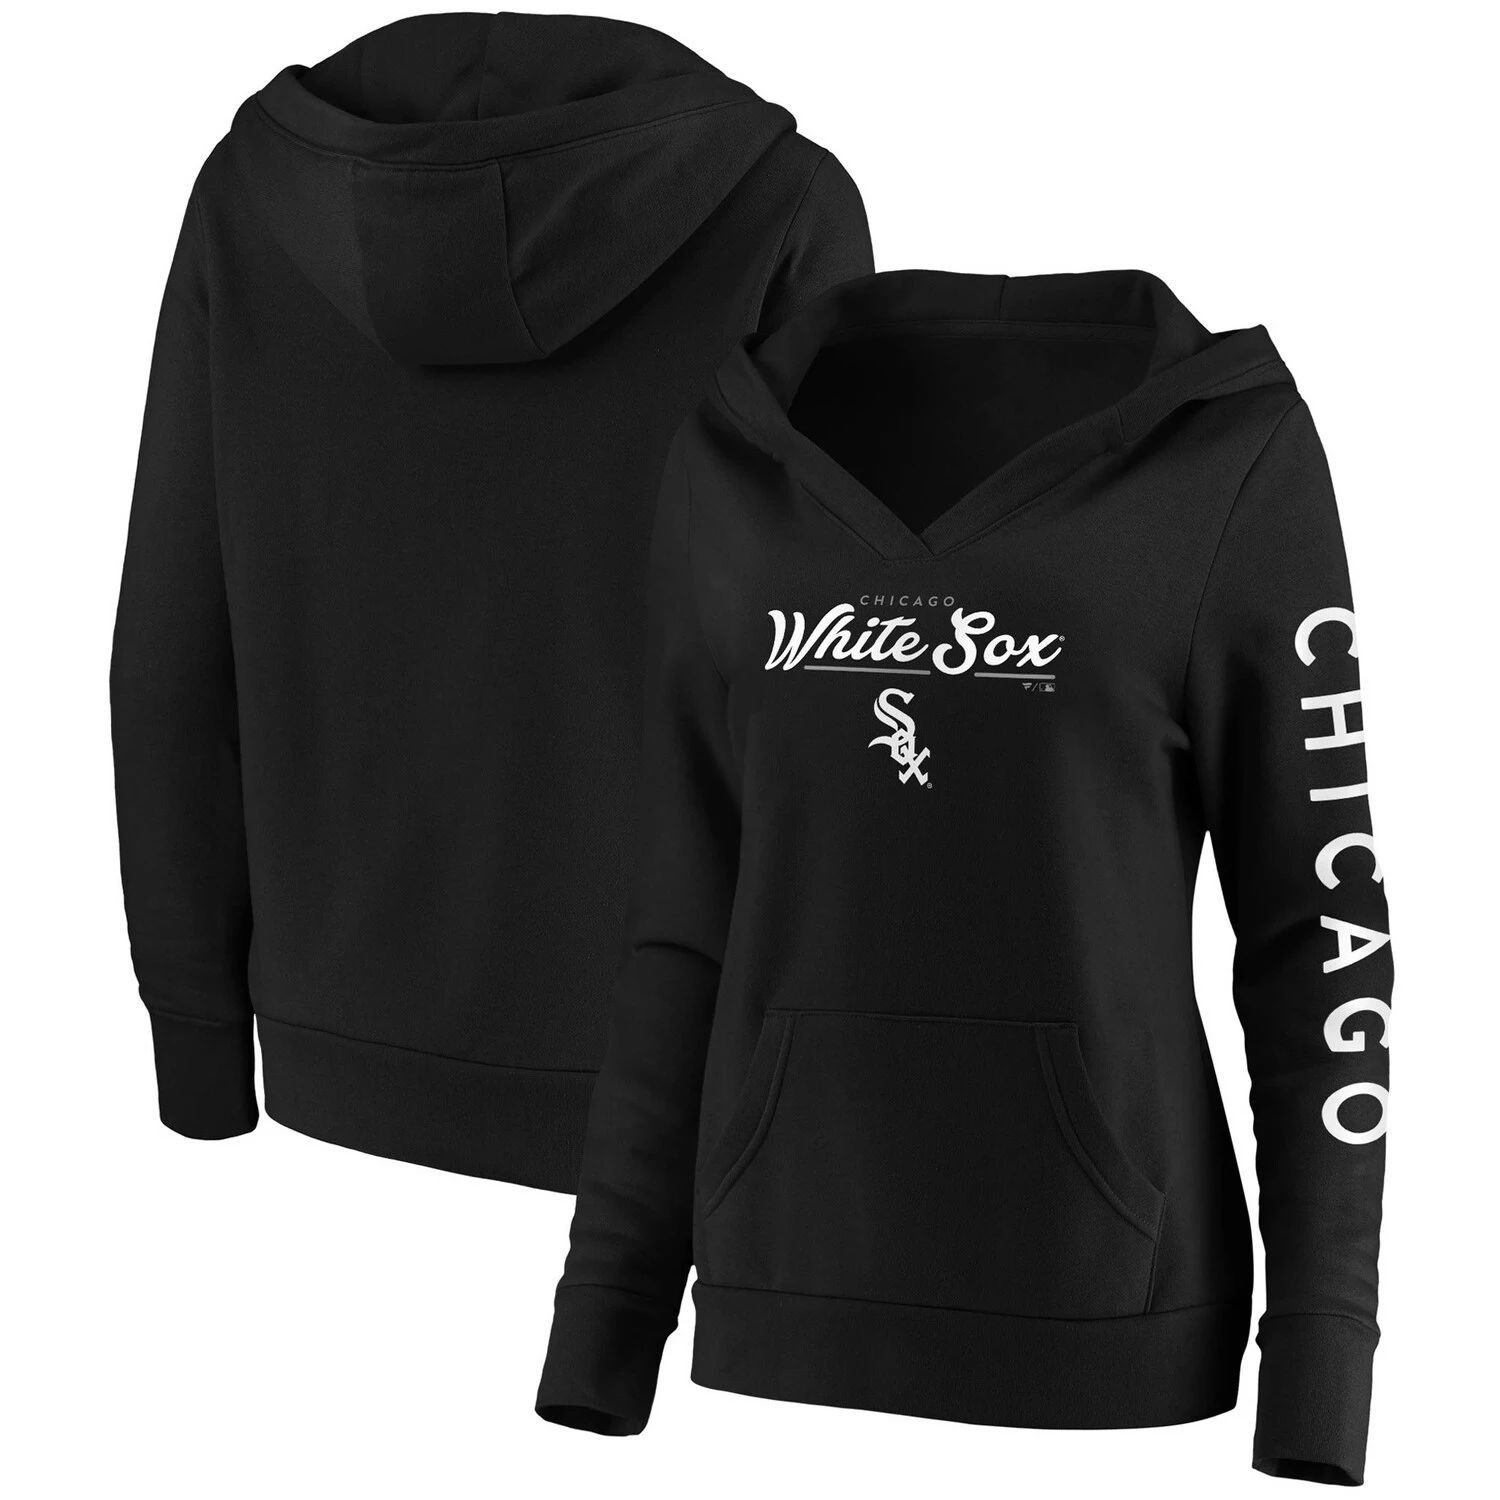 цена Женский пуловер с капюшоном Fanatics, черный, белый, Чикаго, Sox Core, пуловер-кроссовер с капюшоном Fanatics